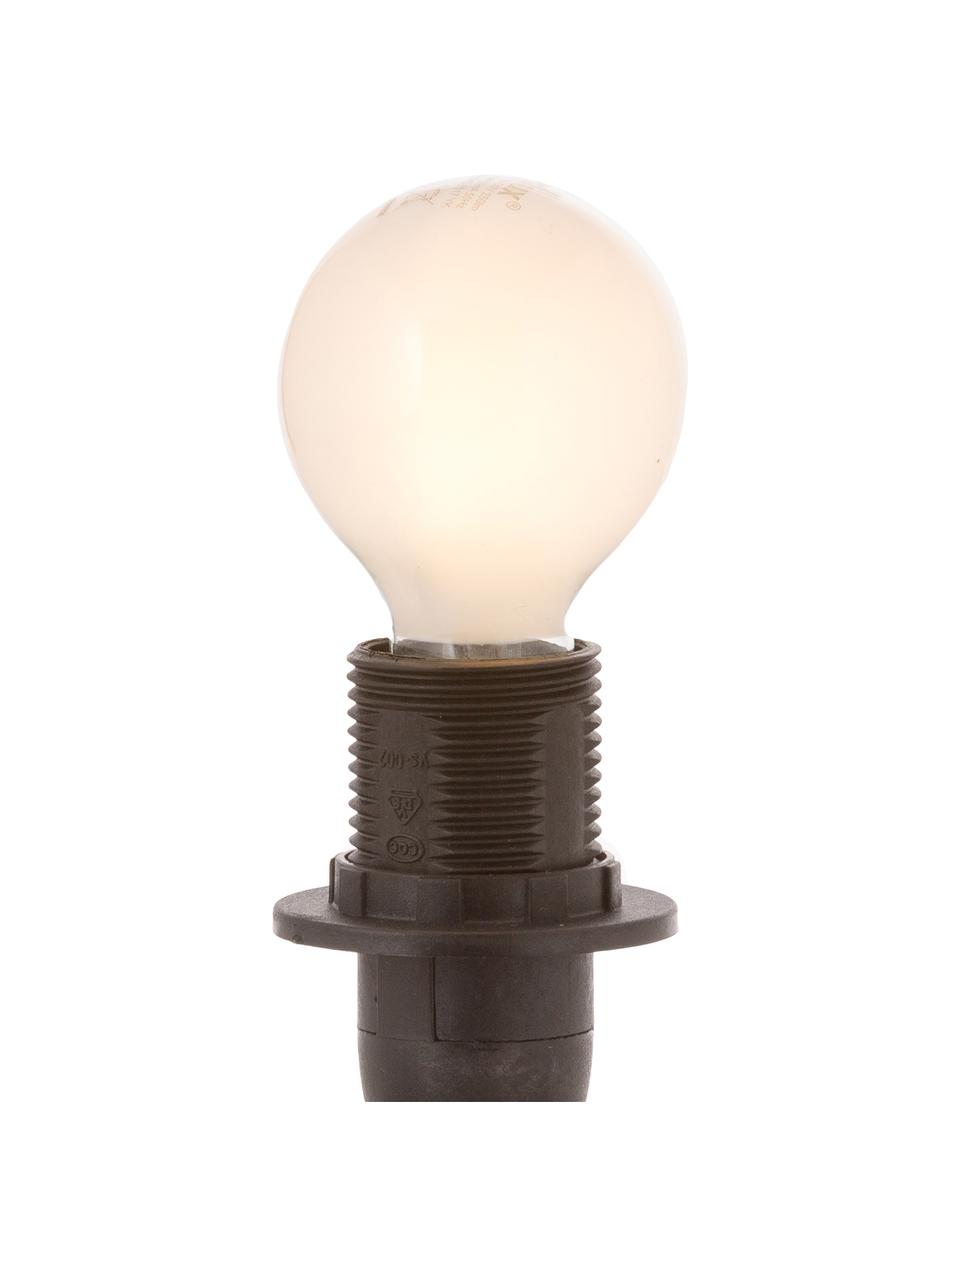 E14 Leuchtmittel, 2.5W, warmweiss, 1 Stück, Leuchtmittelschirm: Kunststoff, Leuchtmittelfassung: Aluminium, Weiss, Ø 5 x H 8 cm